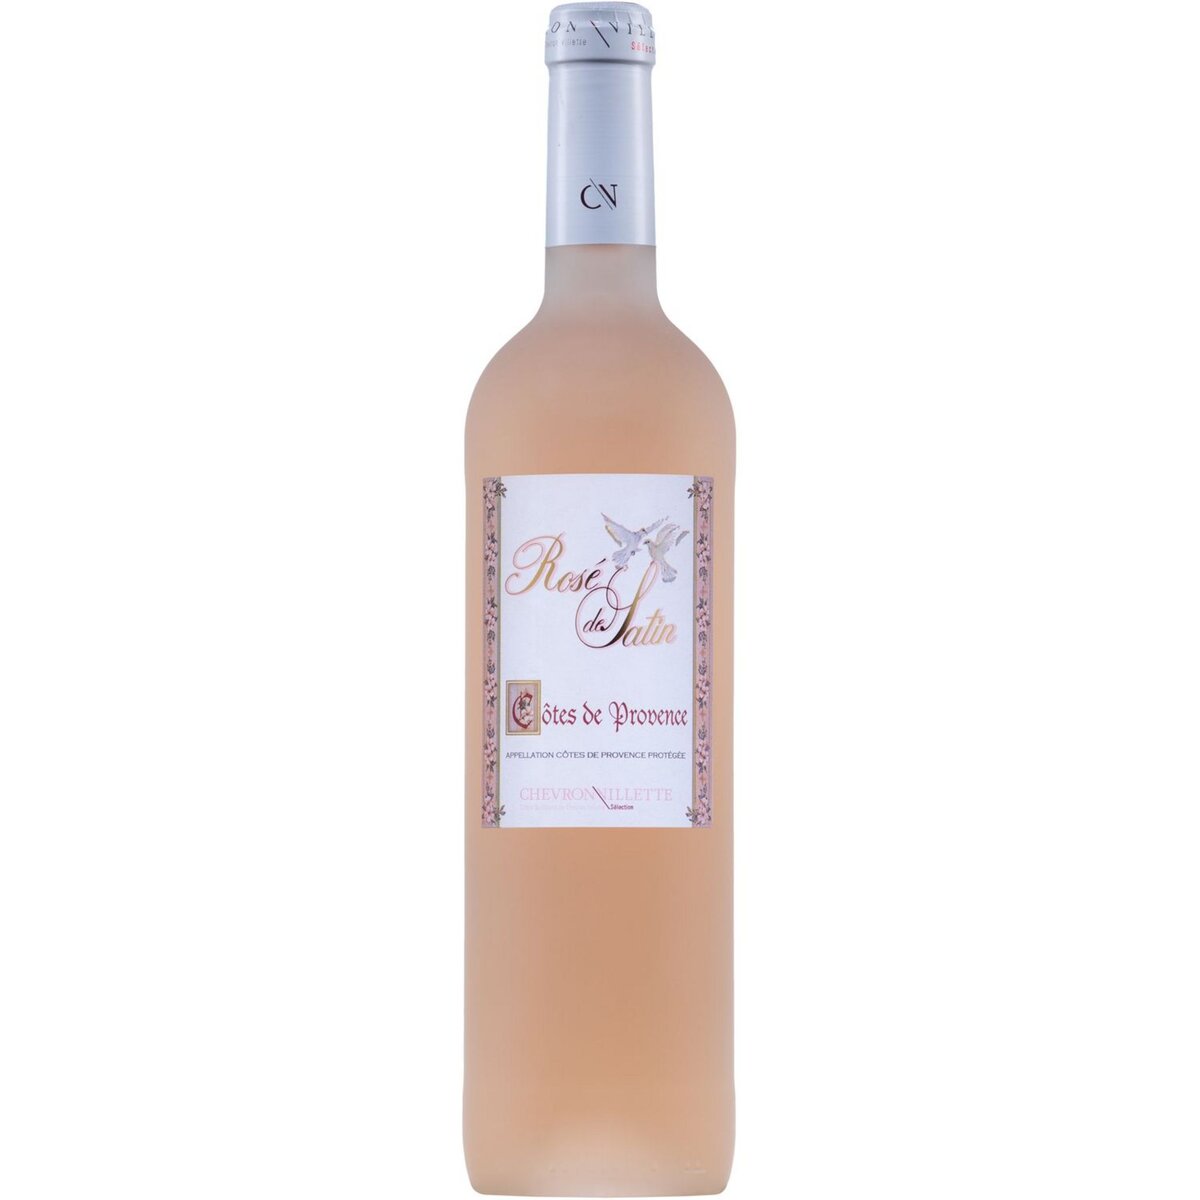 AOP Côtes-de-Provence Rosé de Satin rosé 75cl